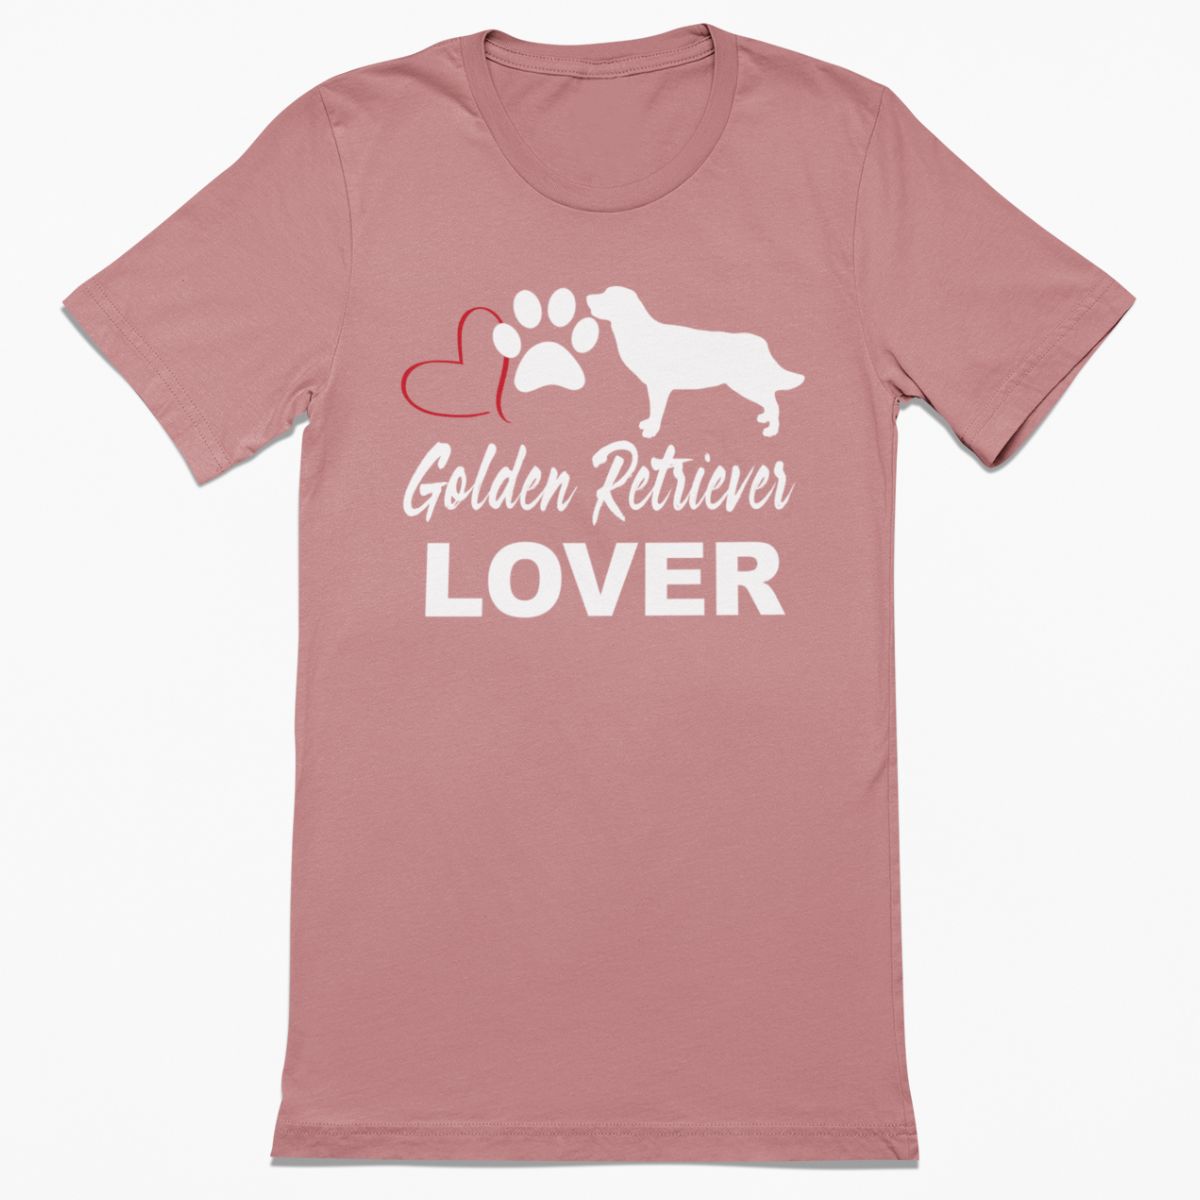 Golden Retriever Lover Shirt